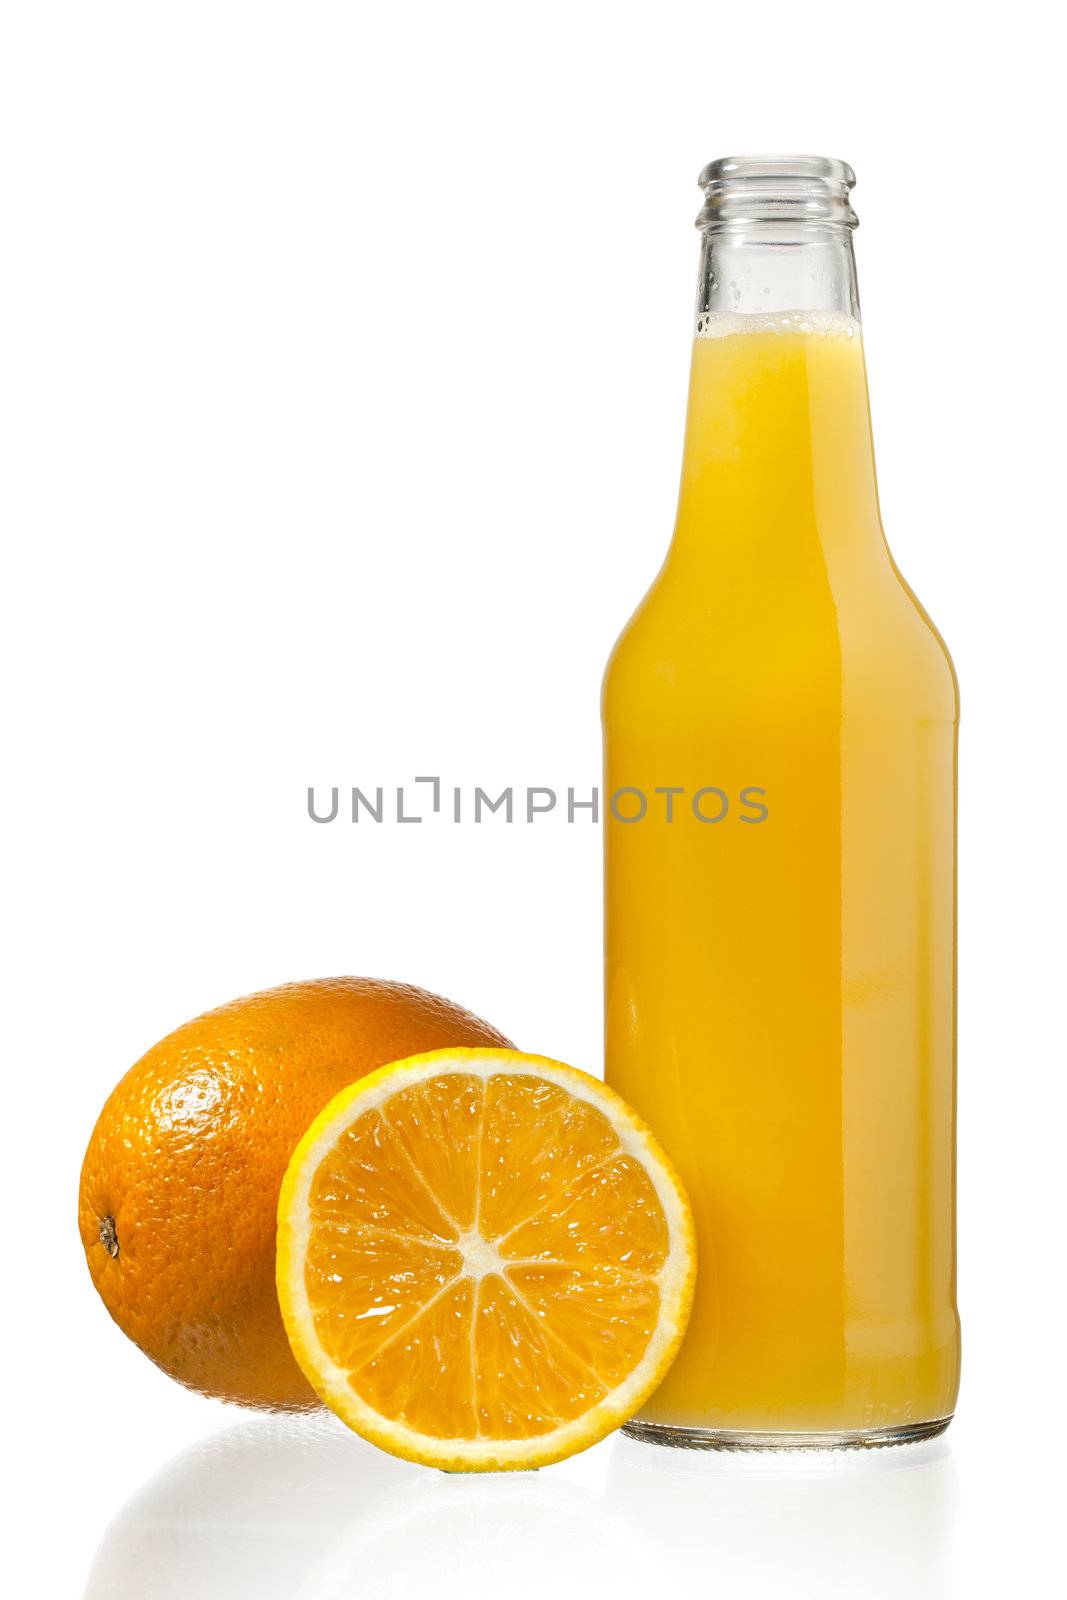 Bottle of orange juice with orange